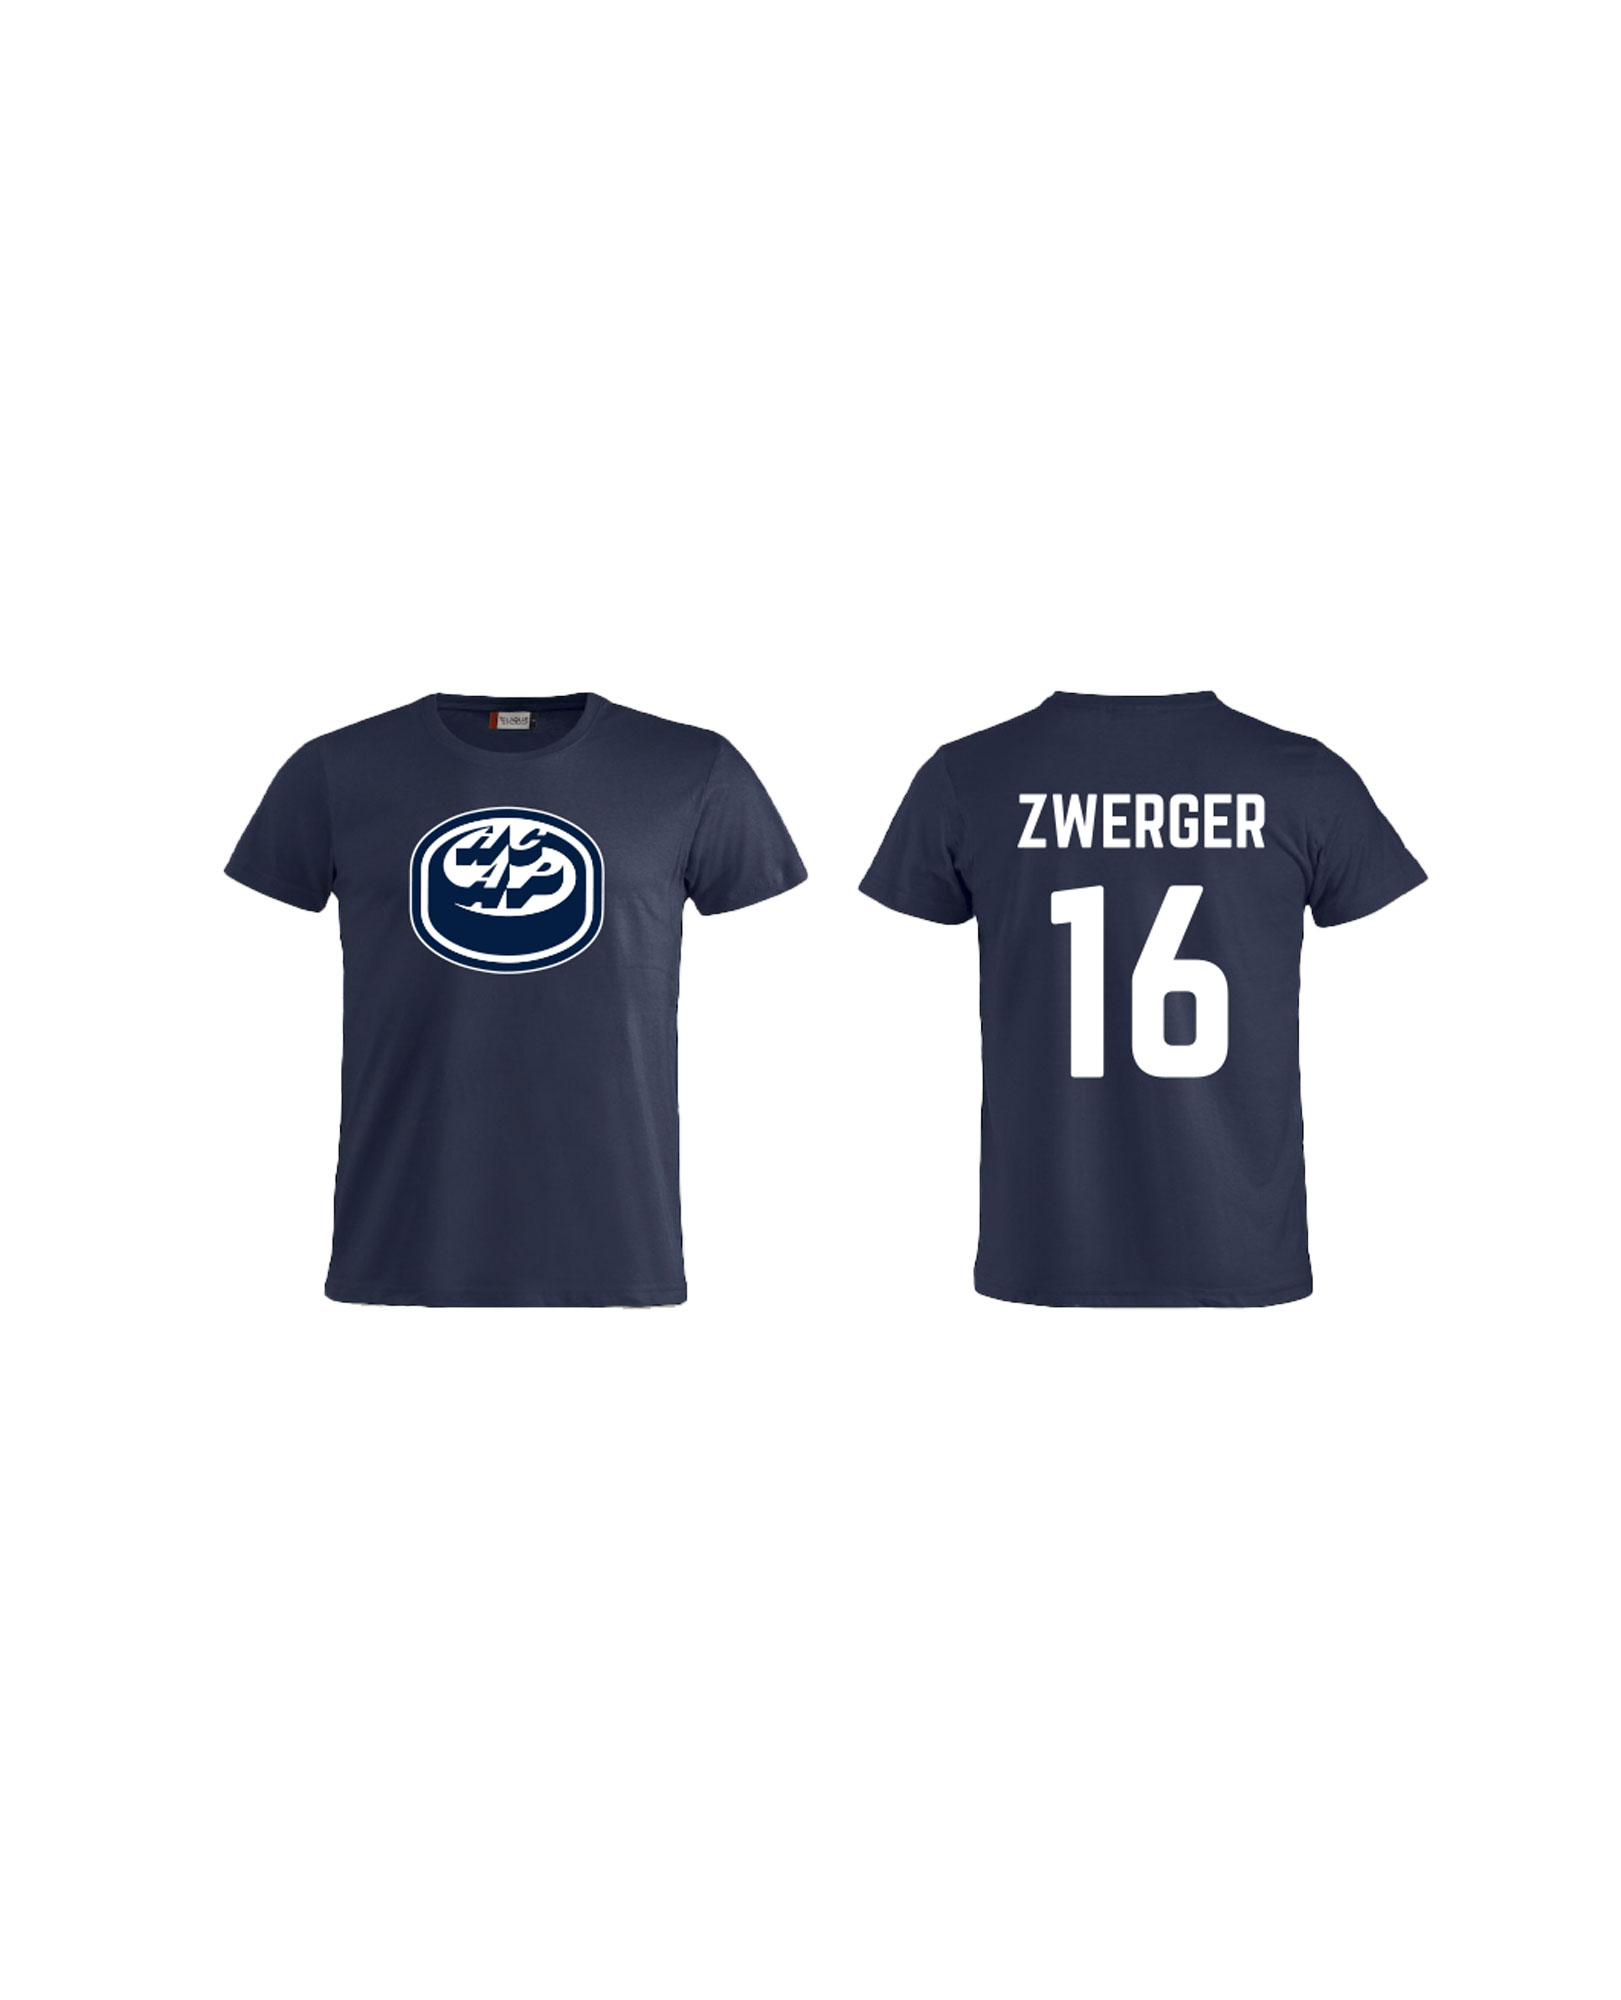 T-Shirt #16 Zwerger